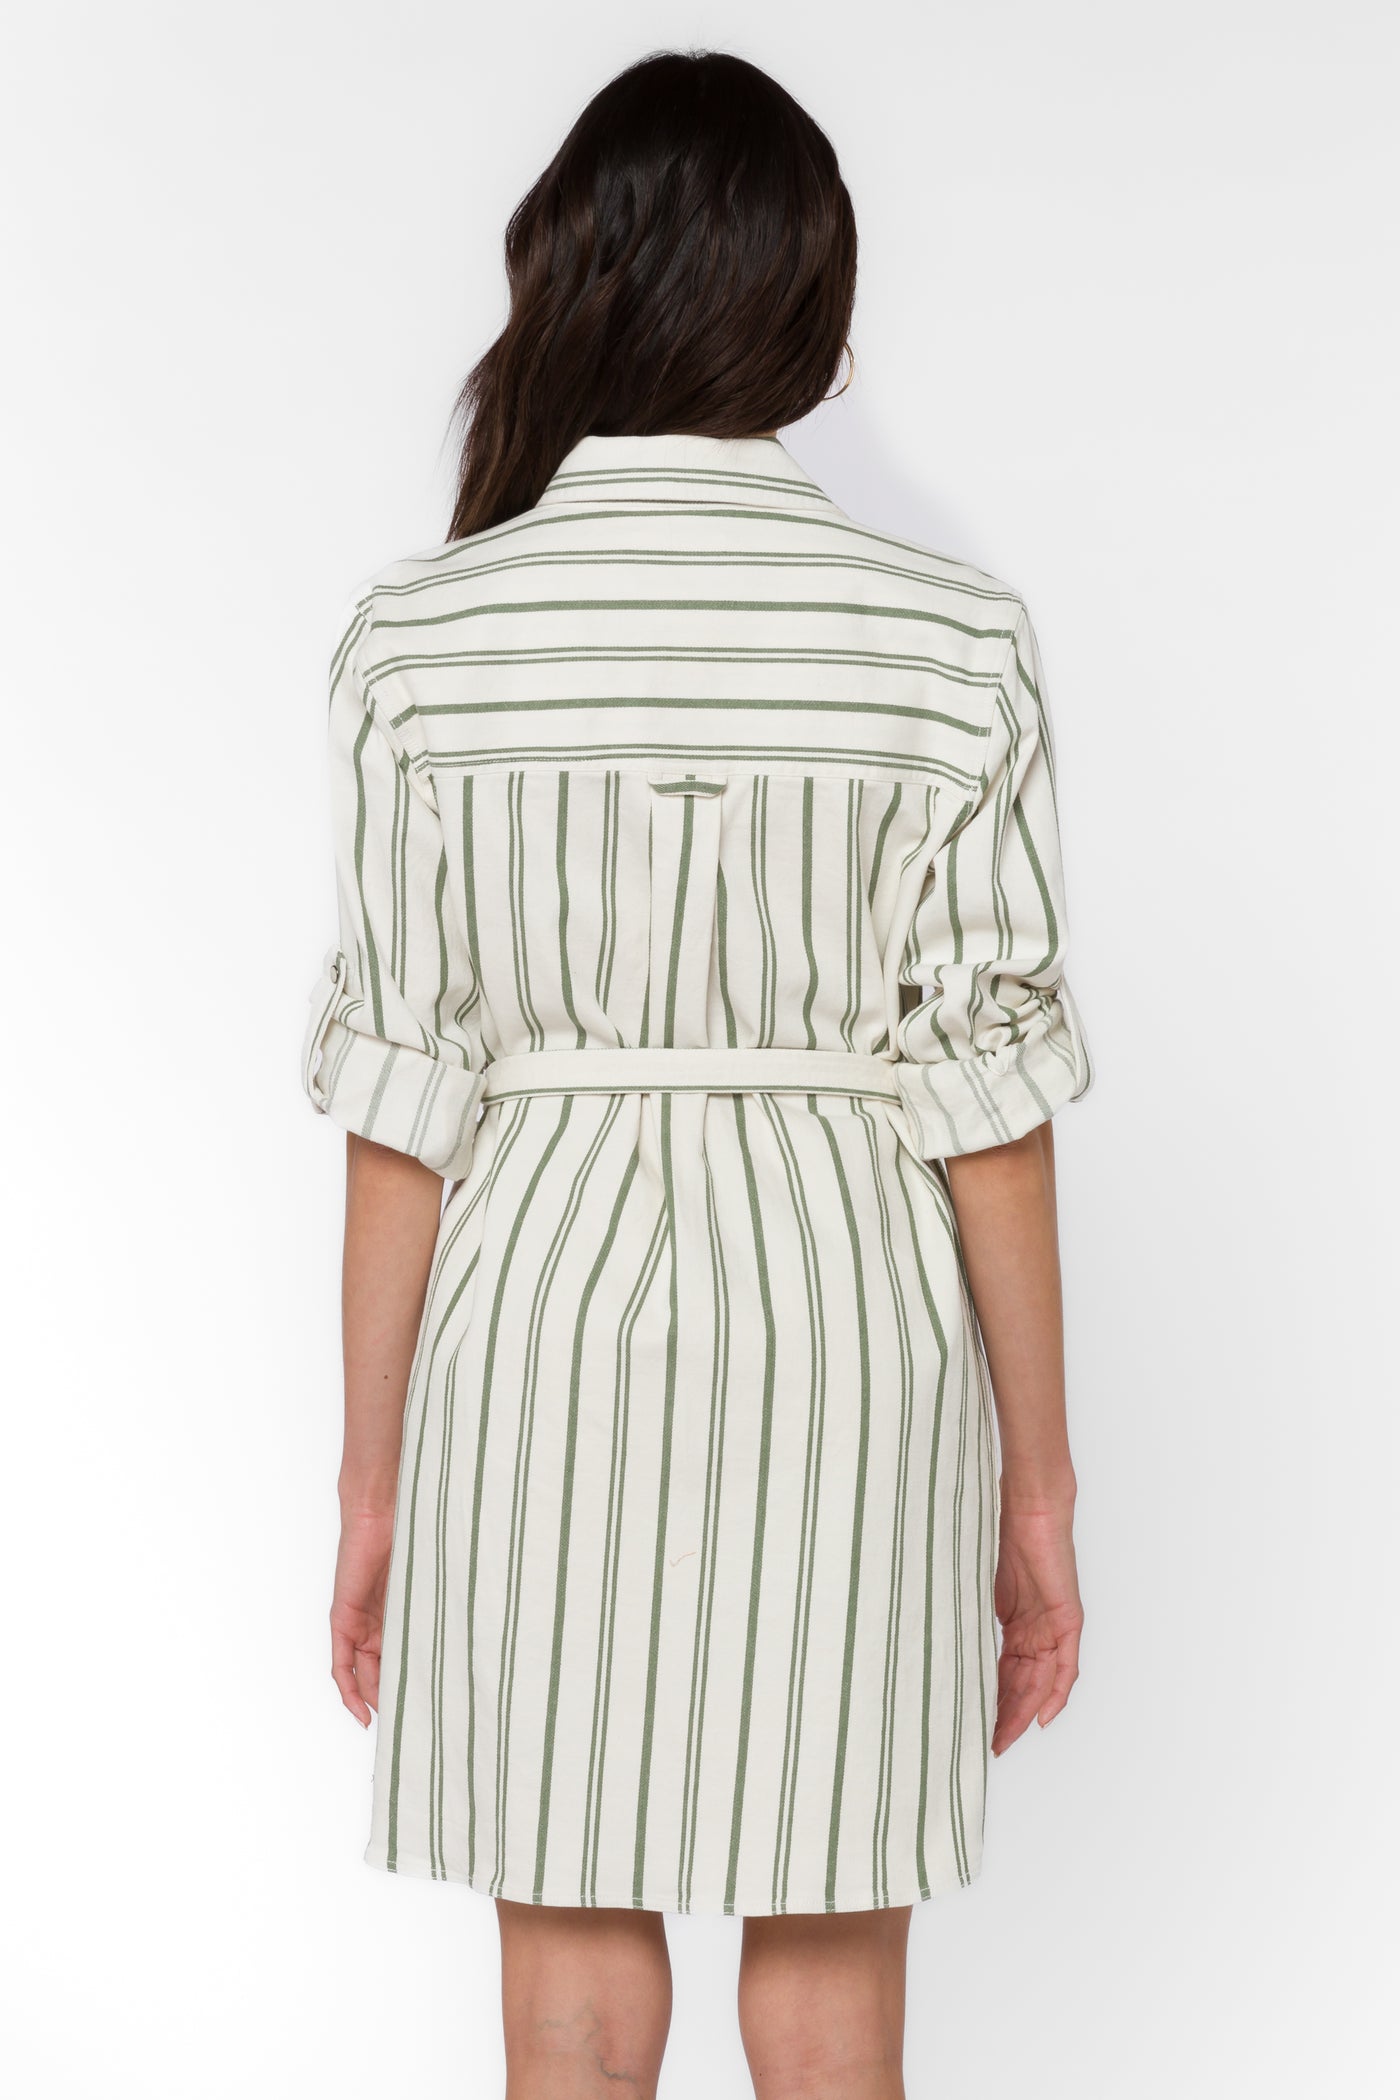 Gelsey Olive Stripe Dress - Dresses - Velvet Heart Clothing